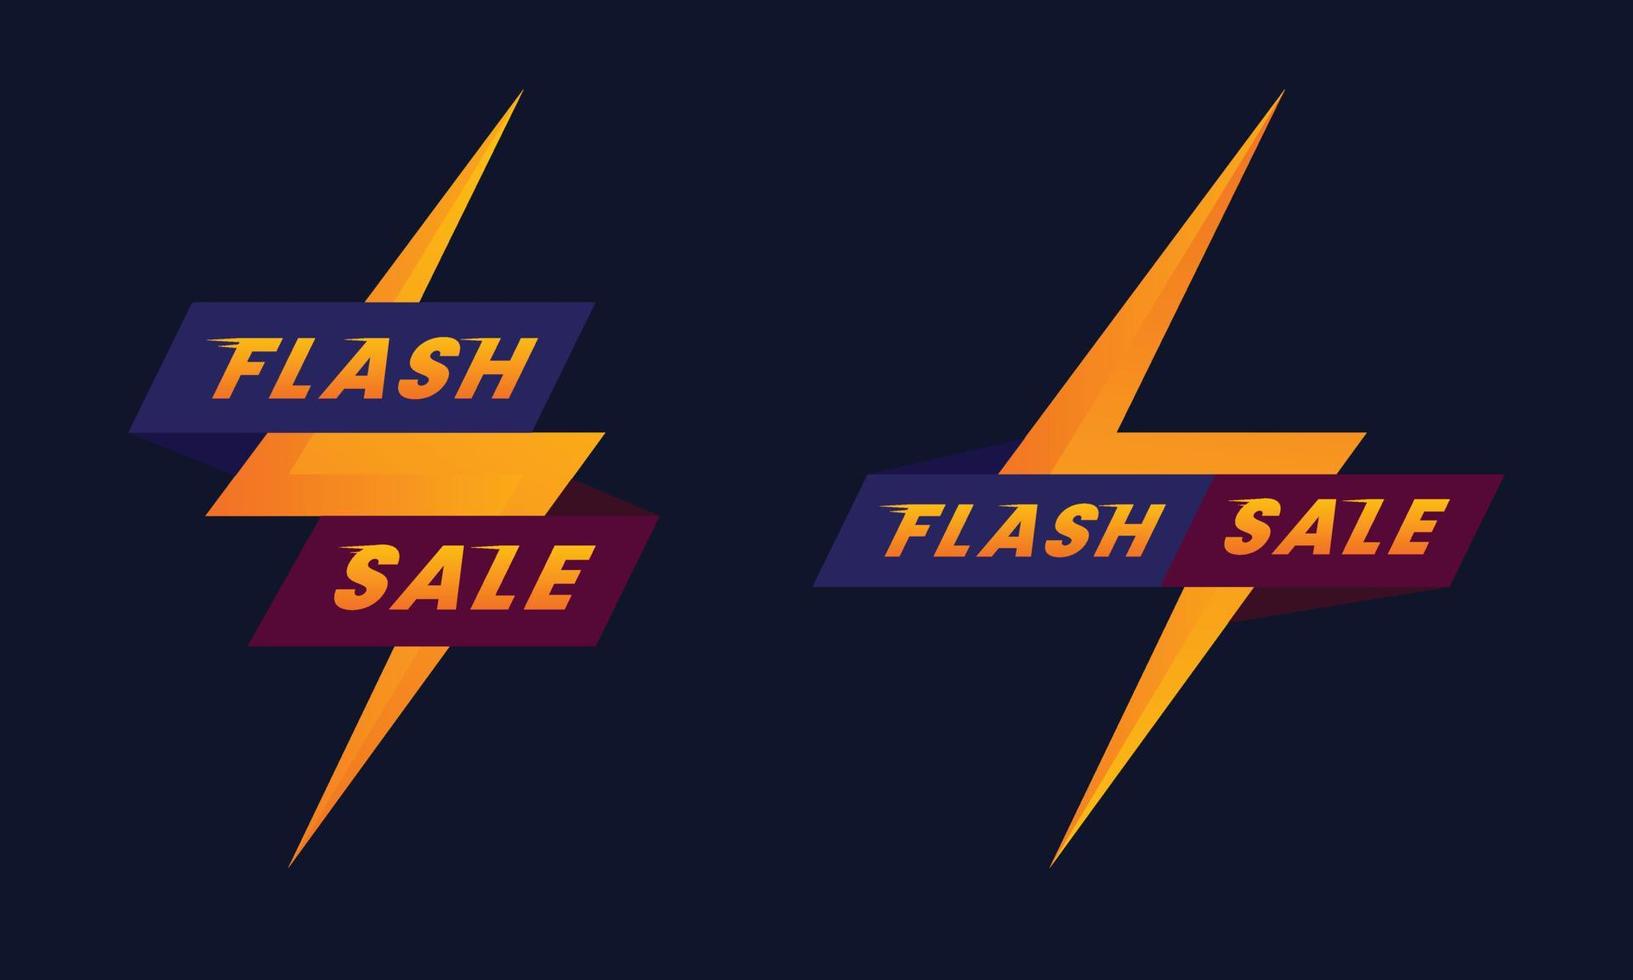 vendita flash banner promozionale con simbolo tuono su sfondo scuro, vettore eps 10 isolato adatto per elementi pubblicitari, banner e poster